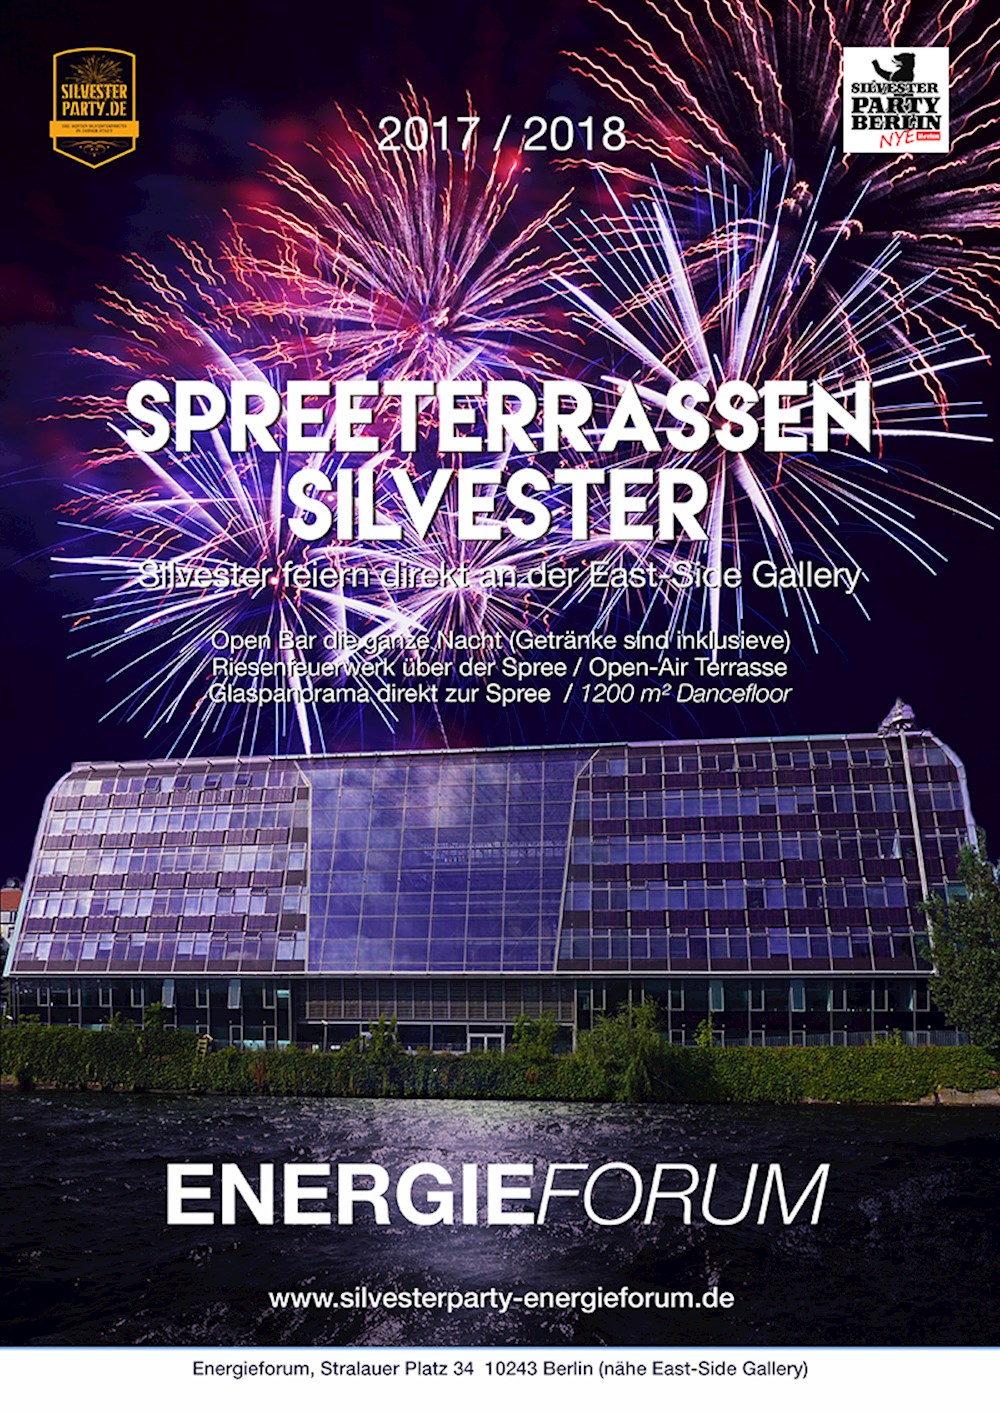 Energieforum Berlin Silvester Spreeterrassen 2017 / 2018 im Atrium des Energieforums